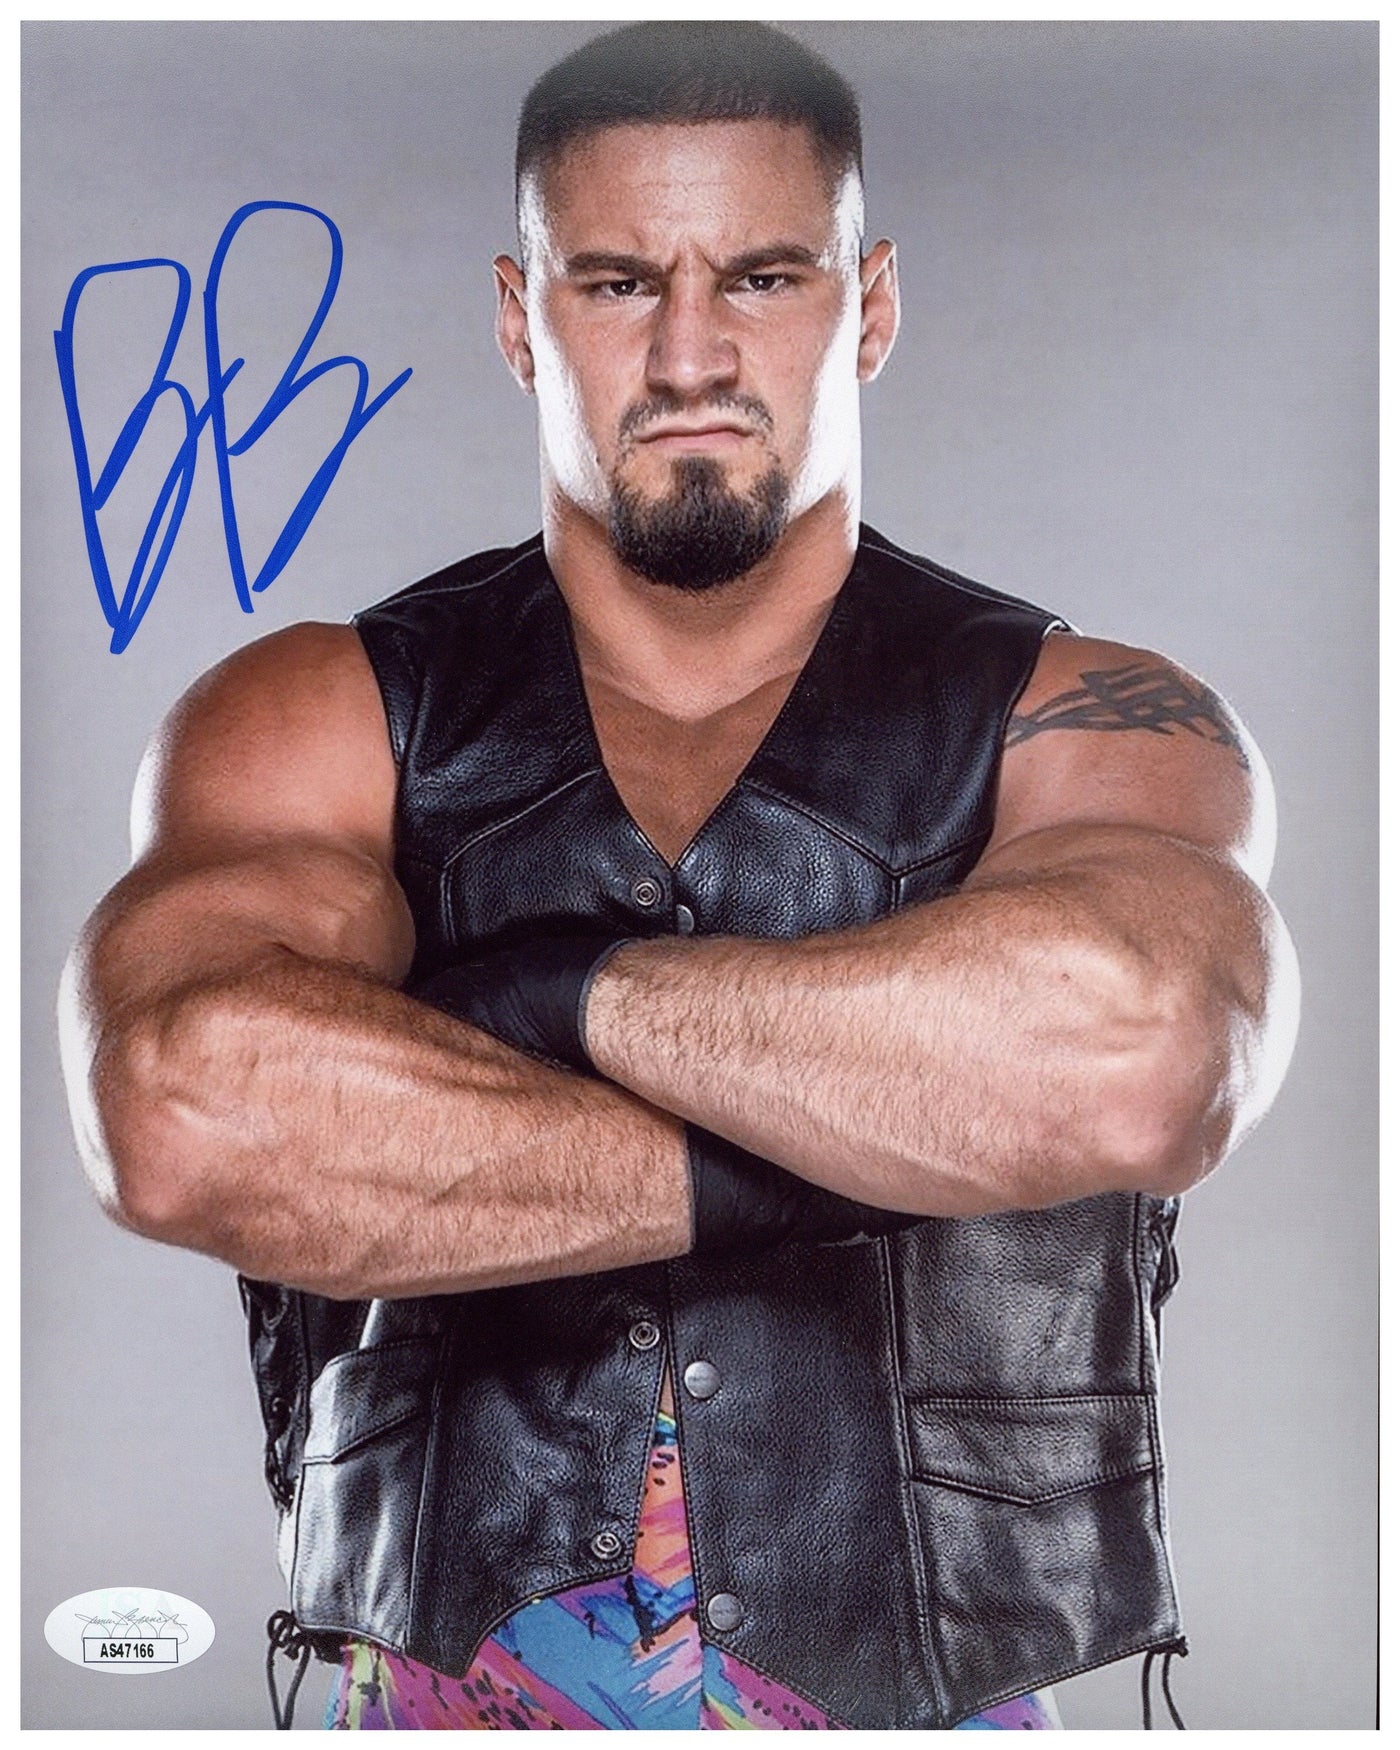 BRON BREAKKER SIGNED 8X10 PHOTO WWE NXT WRESTLER AUTOGRAPHED JSA COA 2